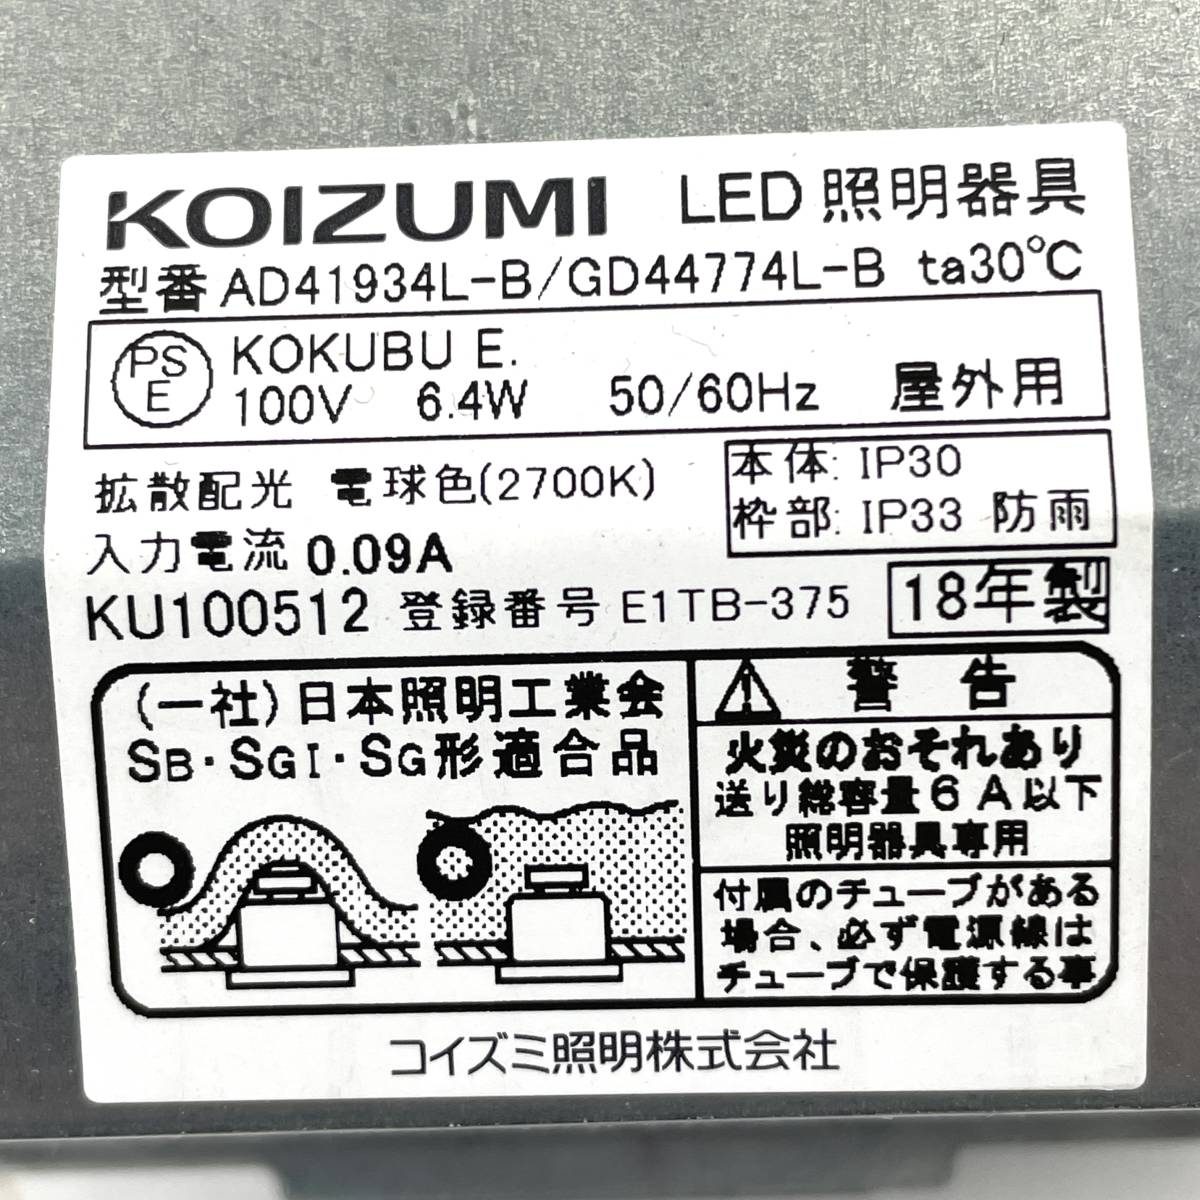 KOIZUMI 防雨型ダウンライト AD41934L 2点 説明書付き LED照明器具 コイズミ【現状販売品】北TM3.の画像7